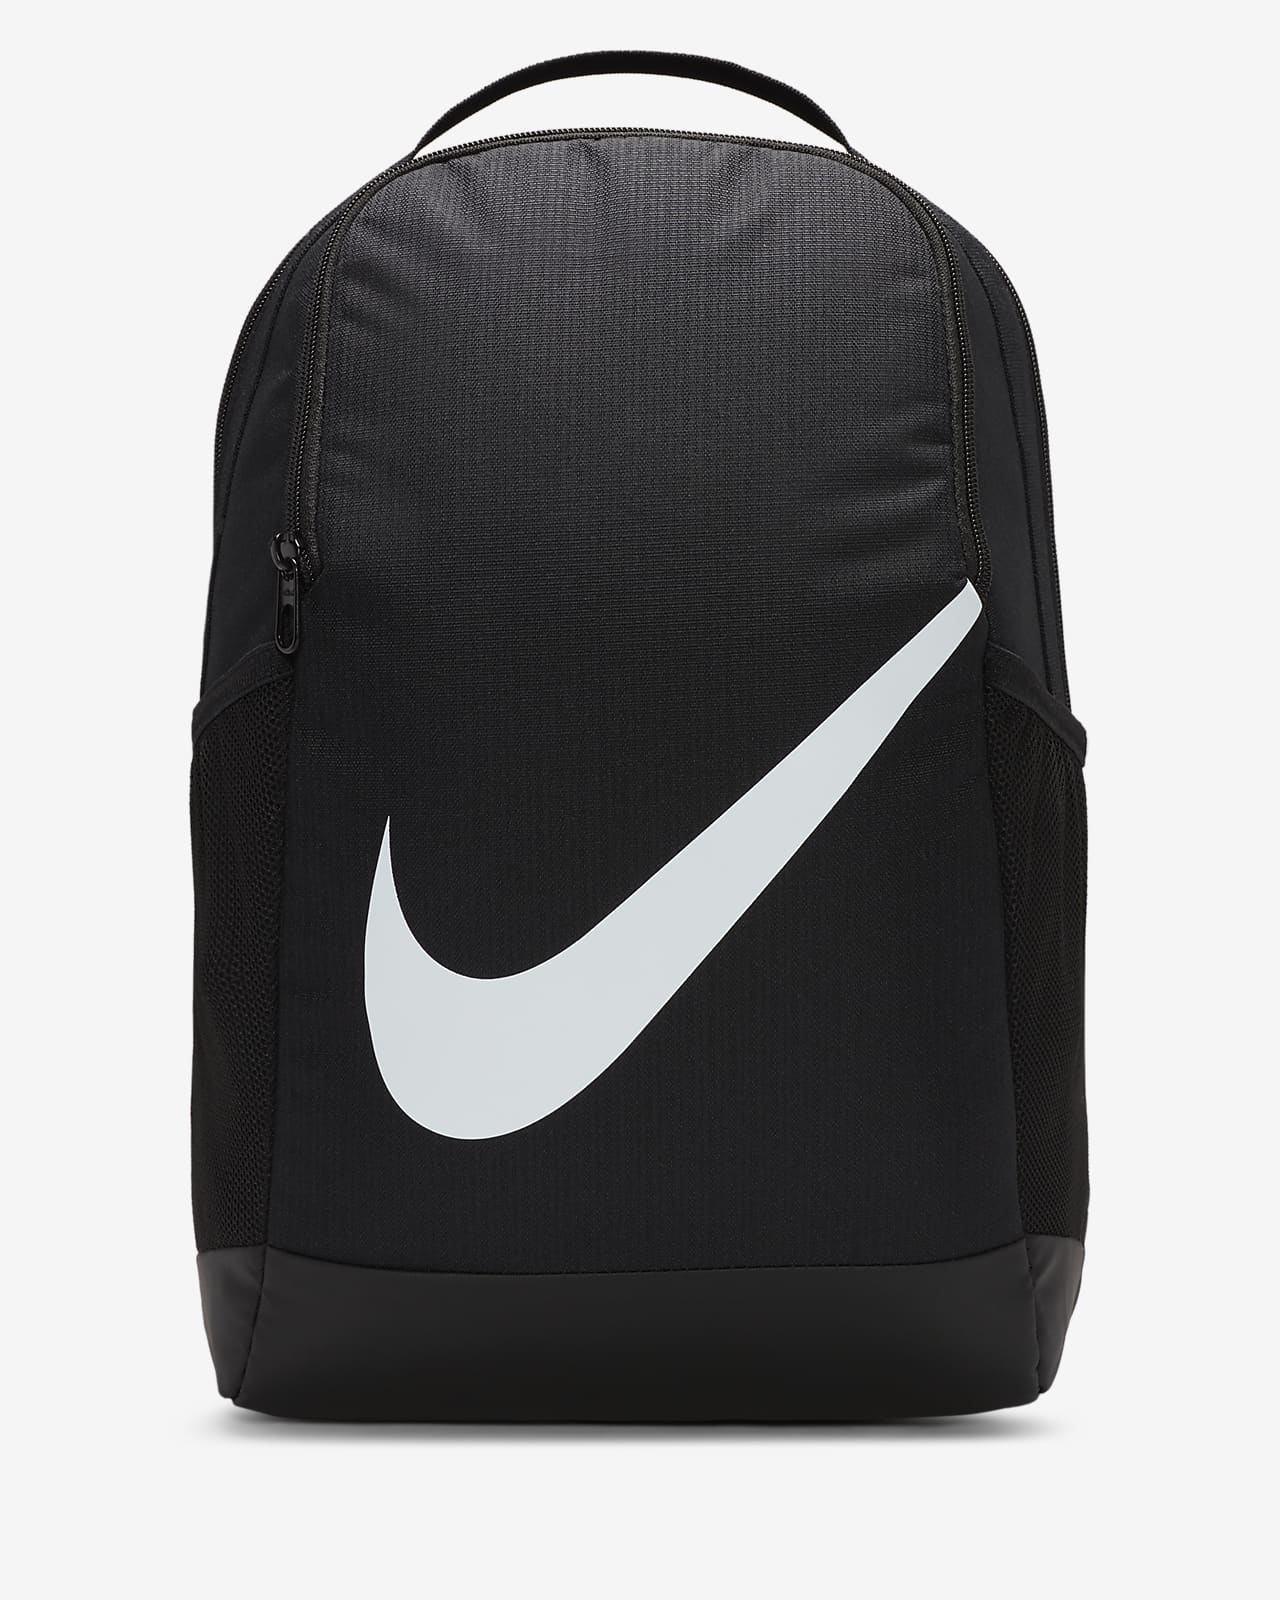 Kids' Backpack (18L). Nike.com